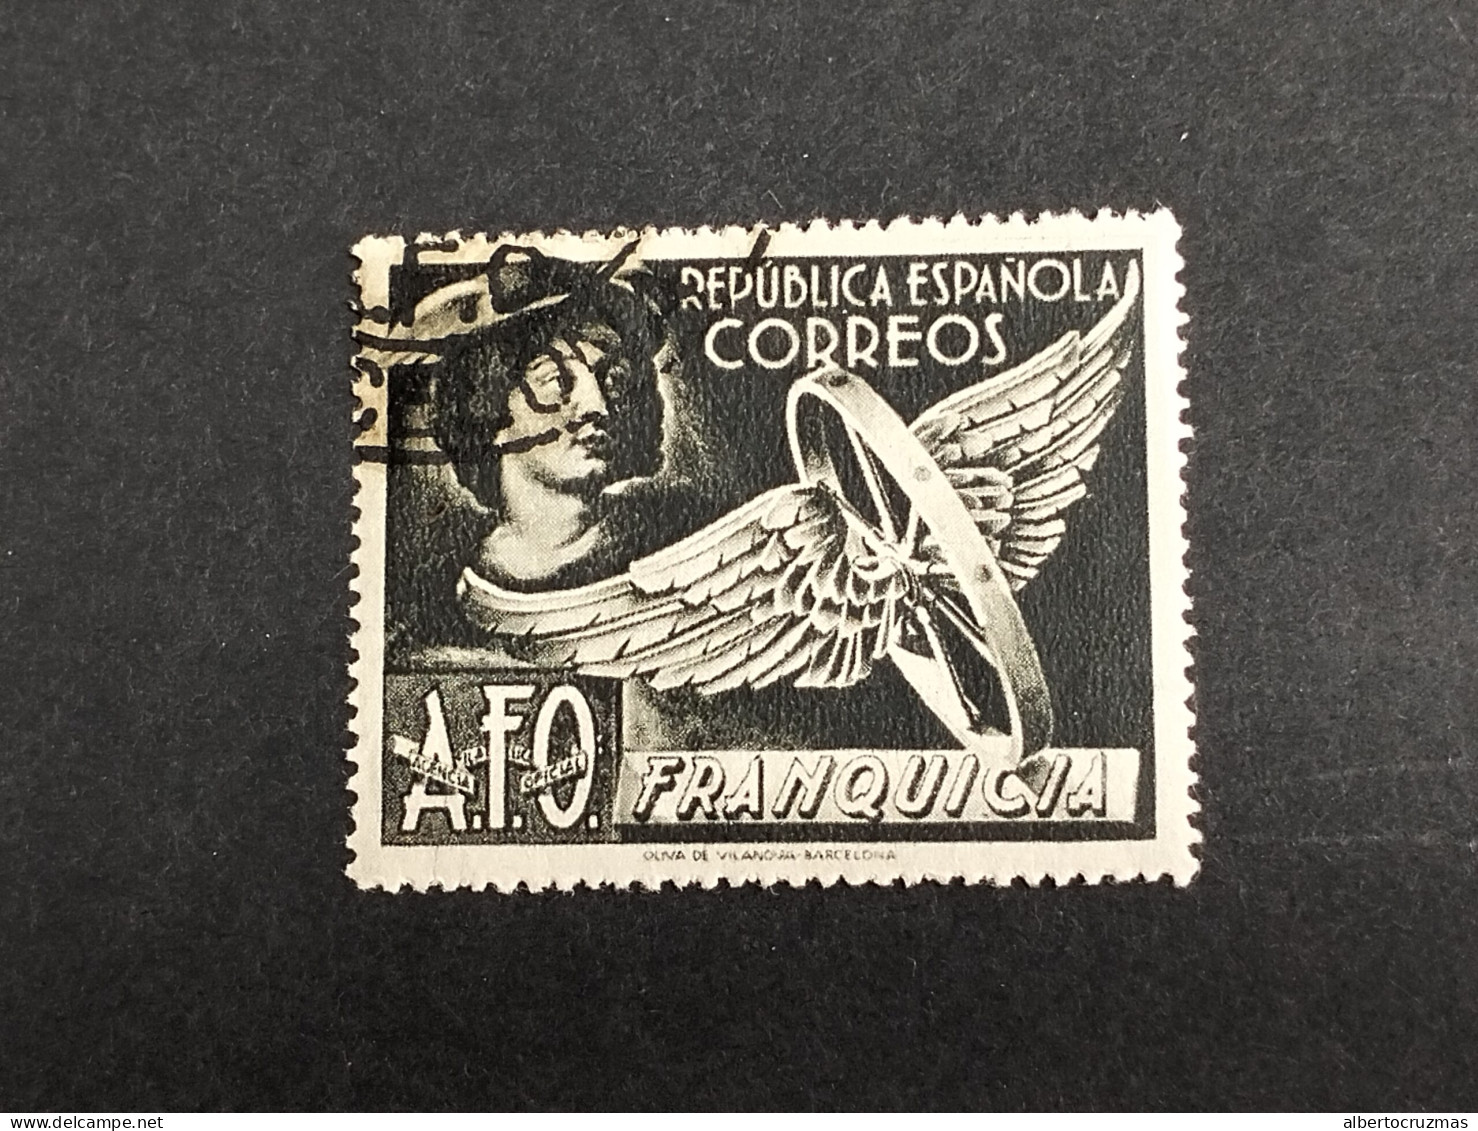 ESPAÑA SELLOS Republica Franquicia Postal   Año 1938 EDIFIL 13 Negro SELLOS Usados - Usati